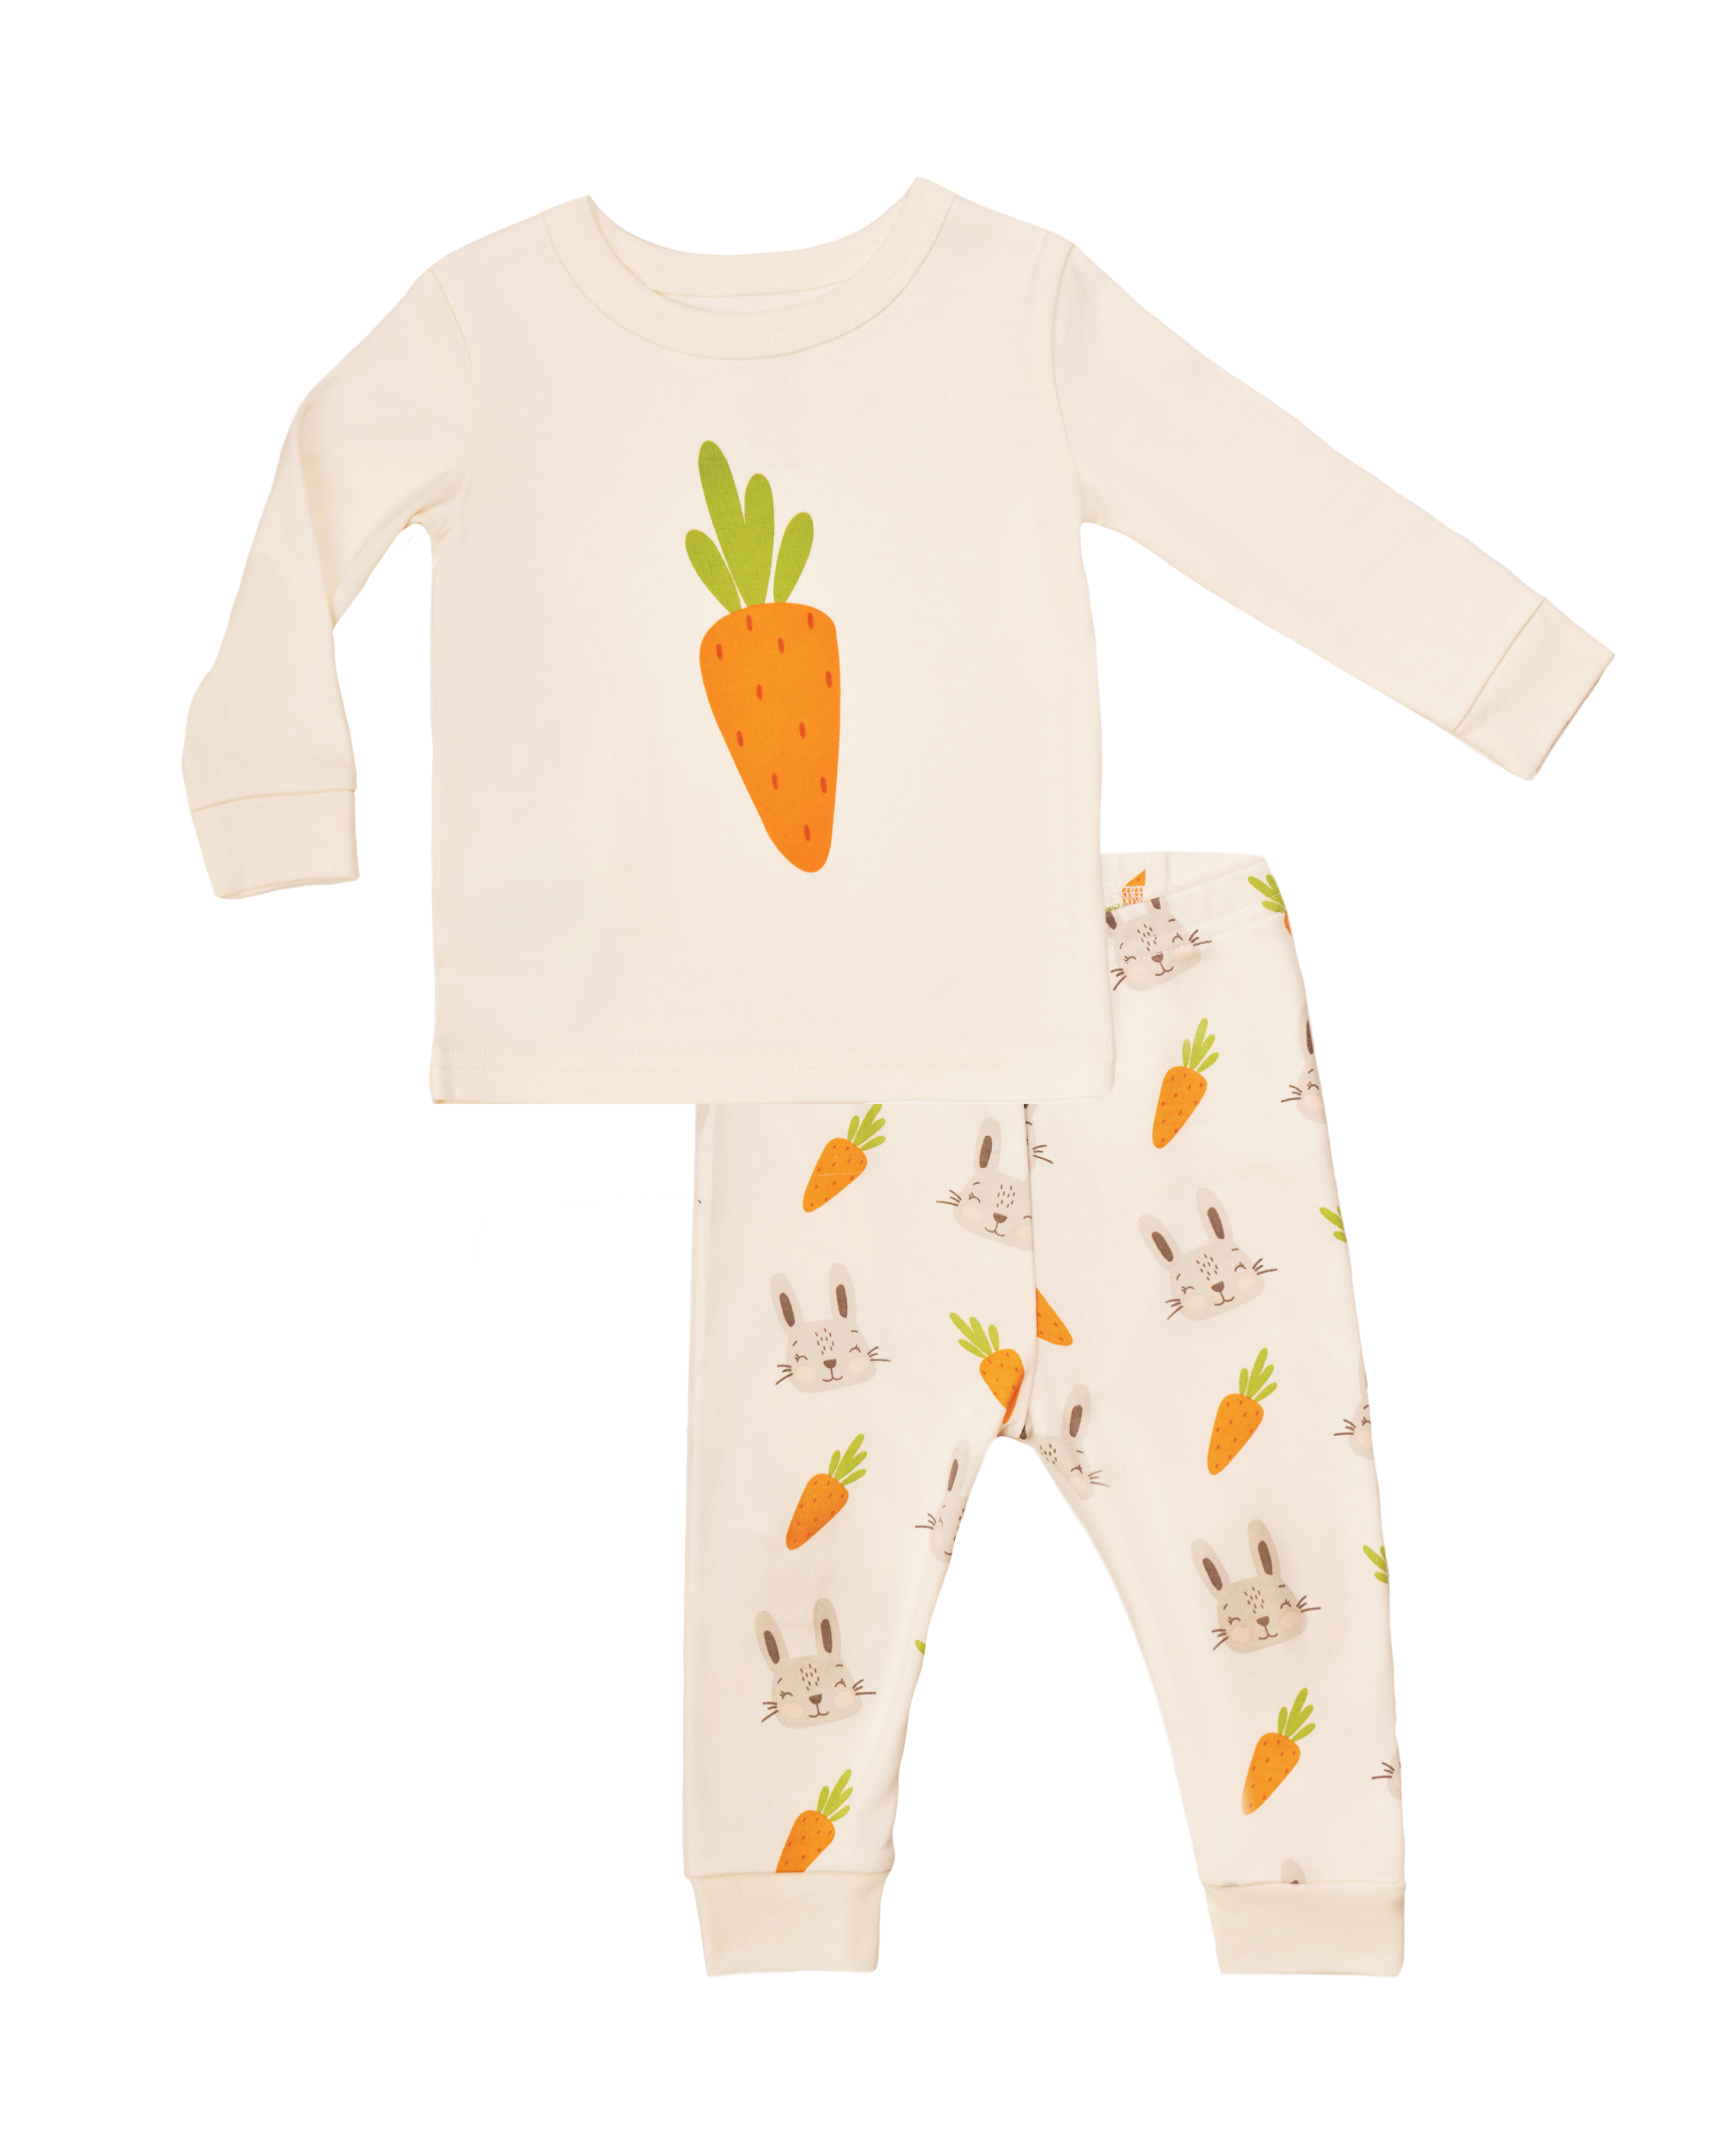 Bear Ear Pajamas, Onesies Pajamas, Carrot Pyjamas, Carrot Pajamas